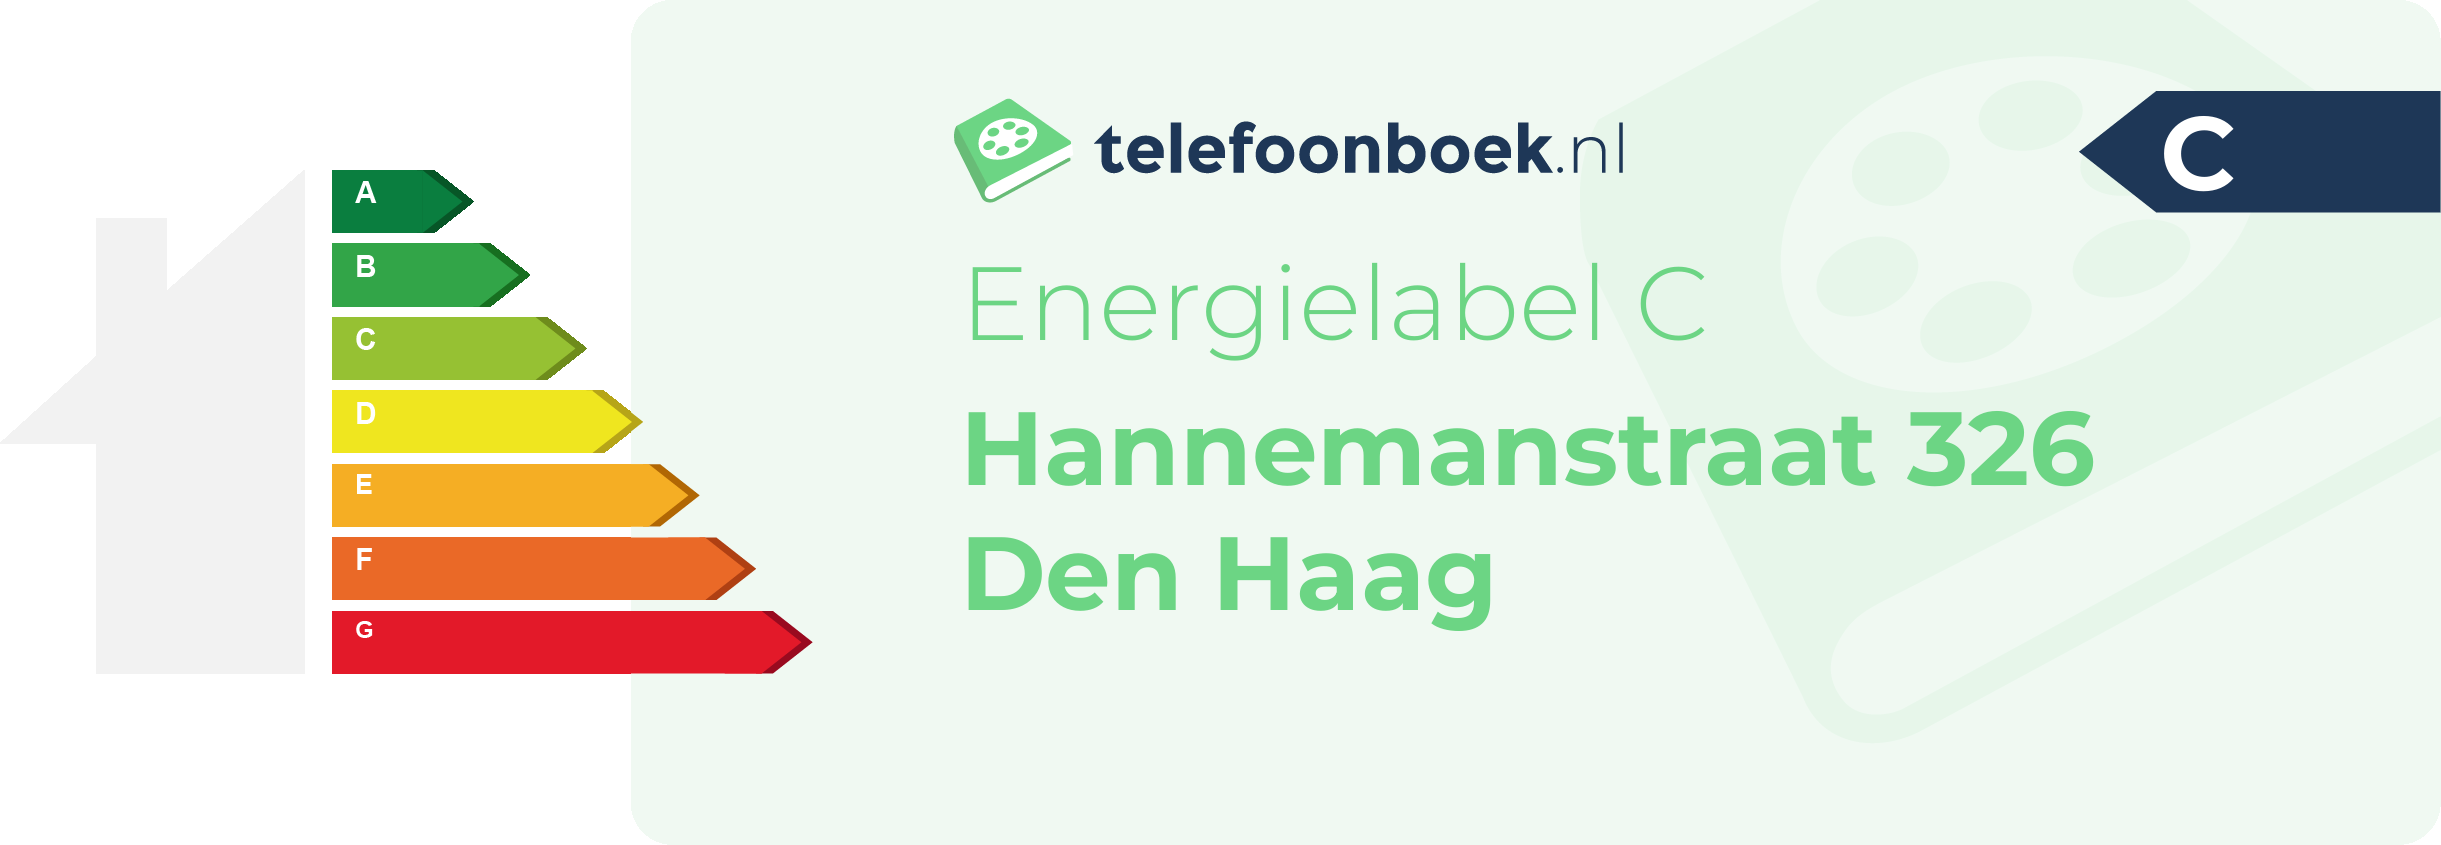 Energielabel Hannemanstraat 326 Den Haag